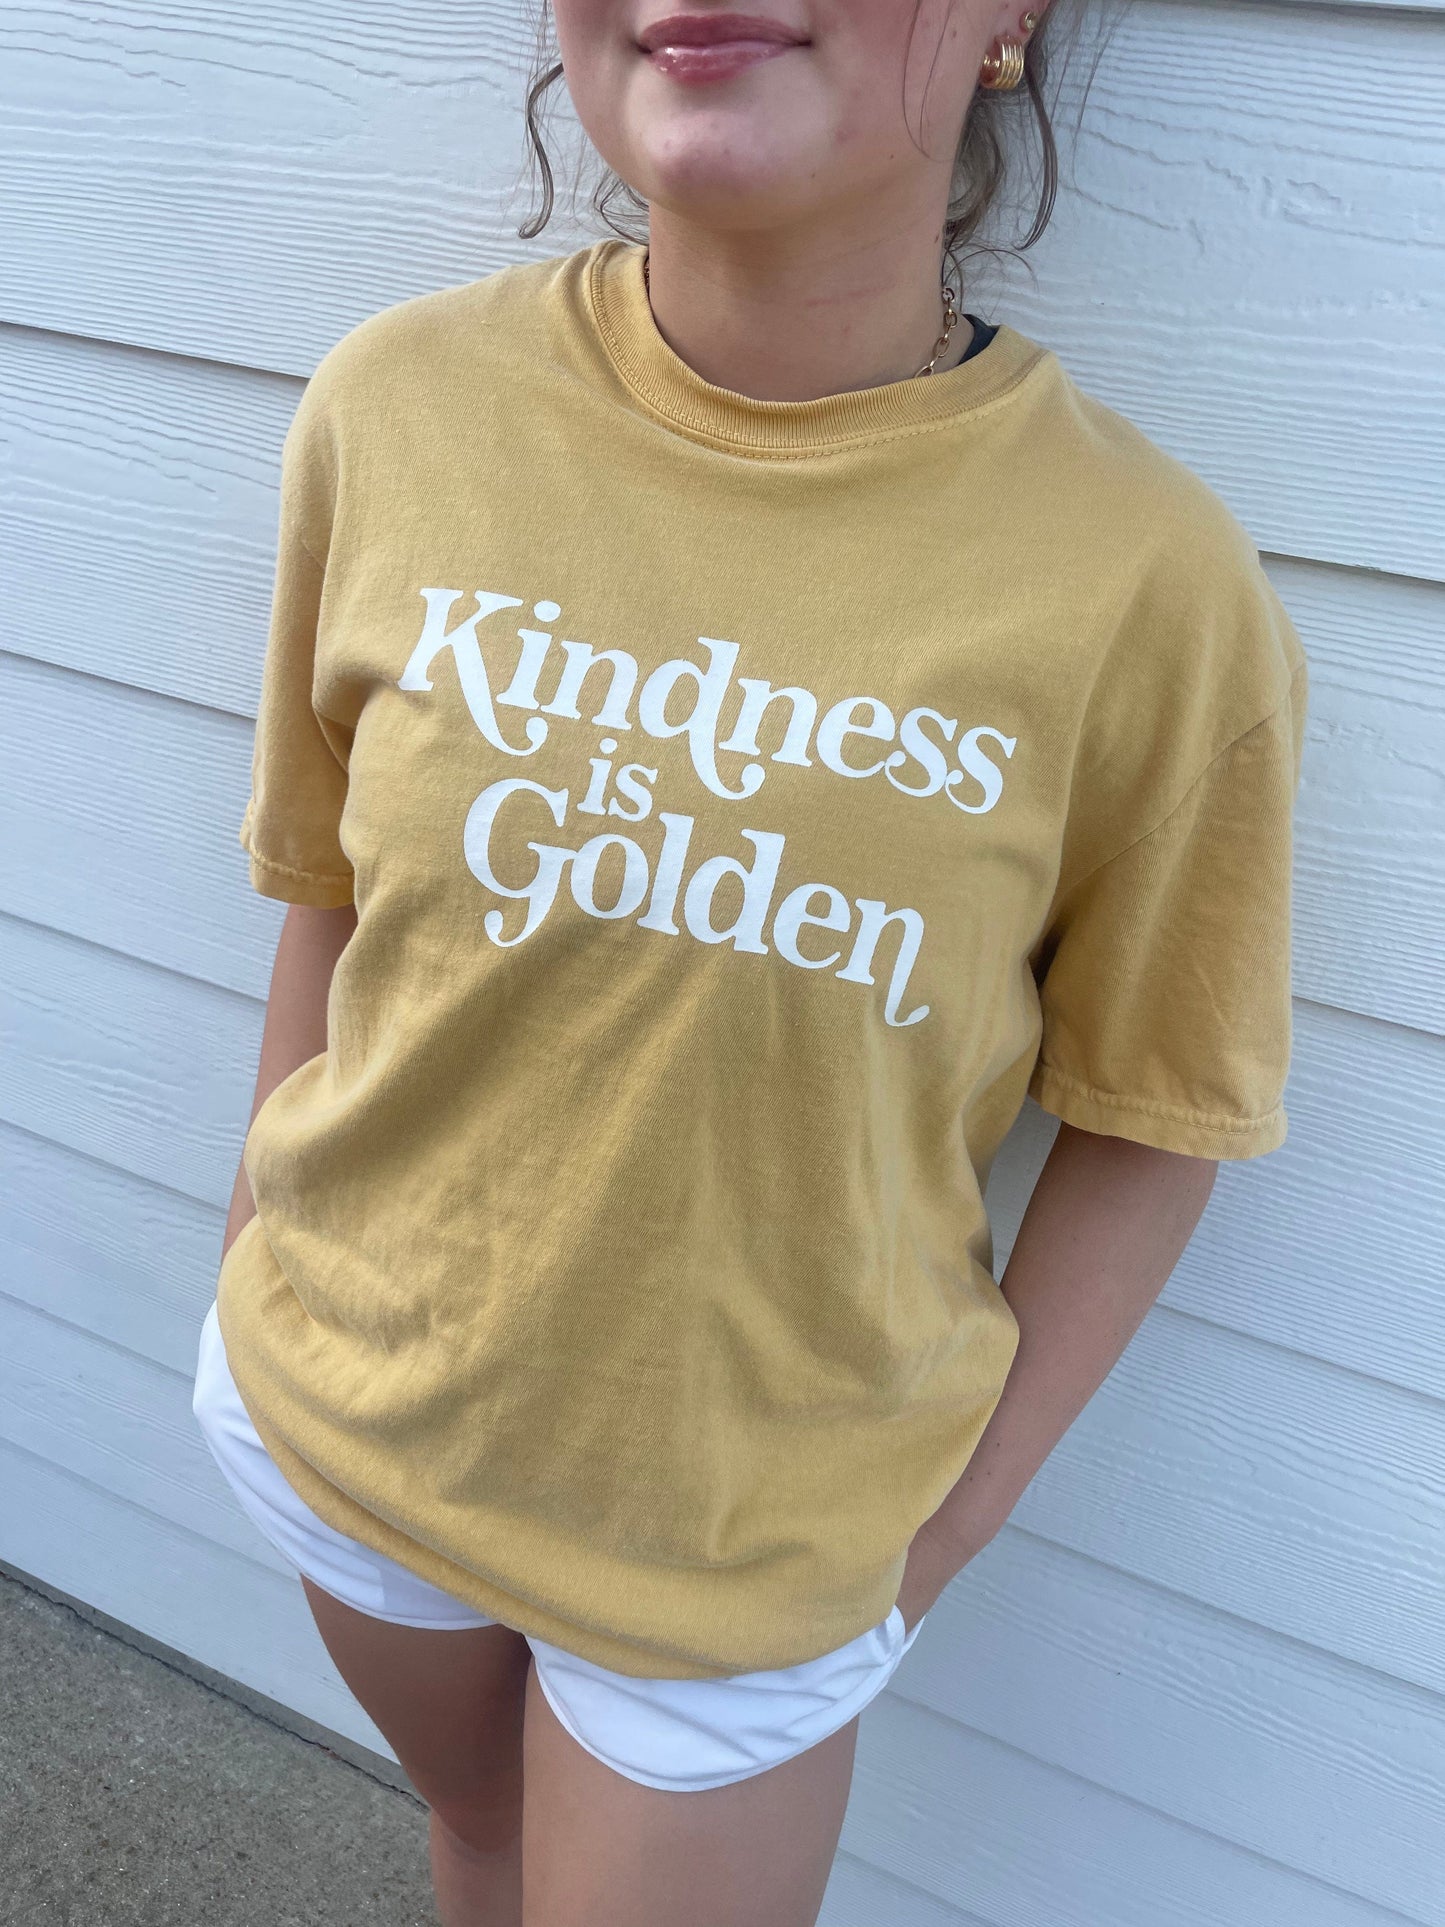 Kindness is Golden T-shirt